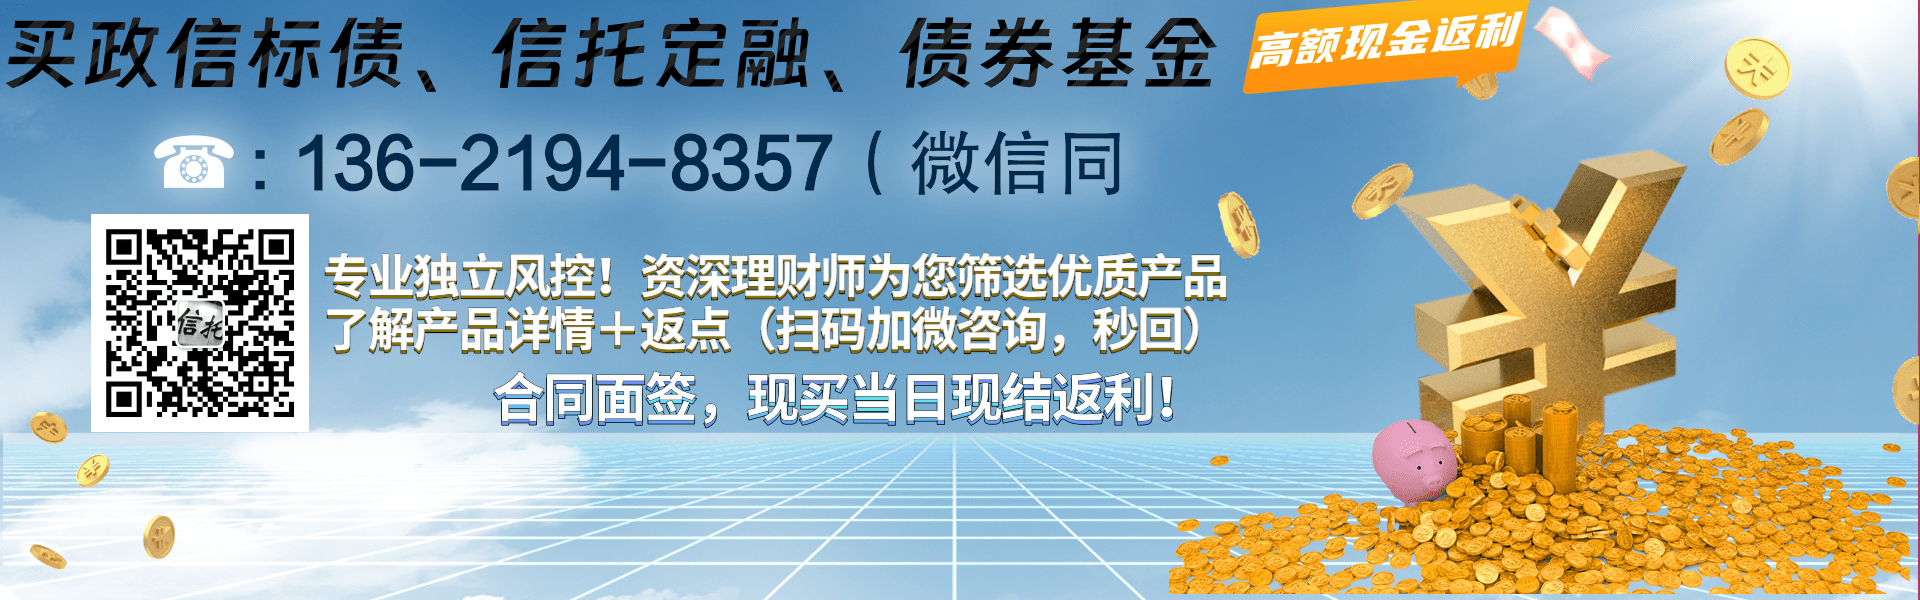 潍坊渤海水产综合开发2022年应收账款债权计划